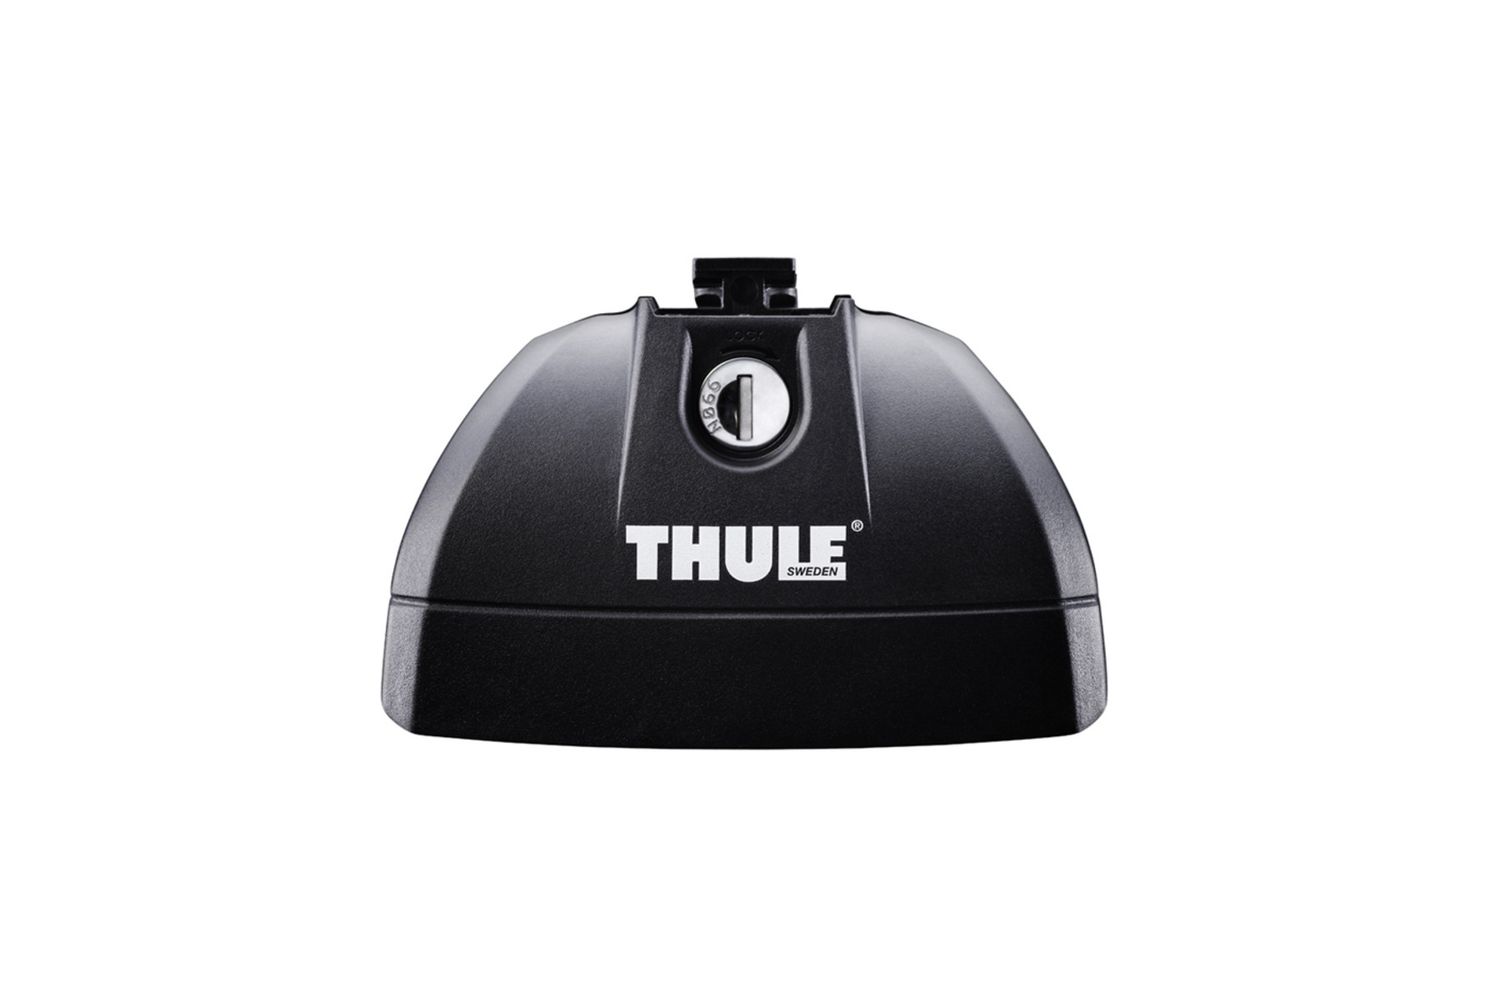 Комплект опор Thule Rapid System для автомобилей со специальными штатными местами (753) упоры thule evo 710410 для автомобилей с обычными рейлингами с замками